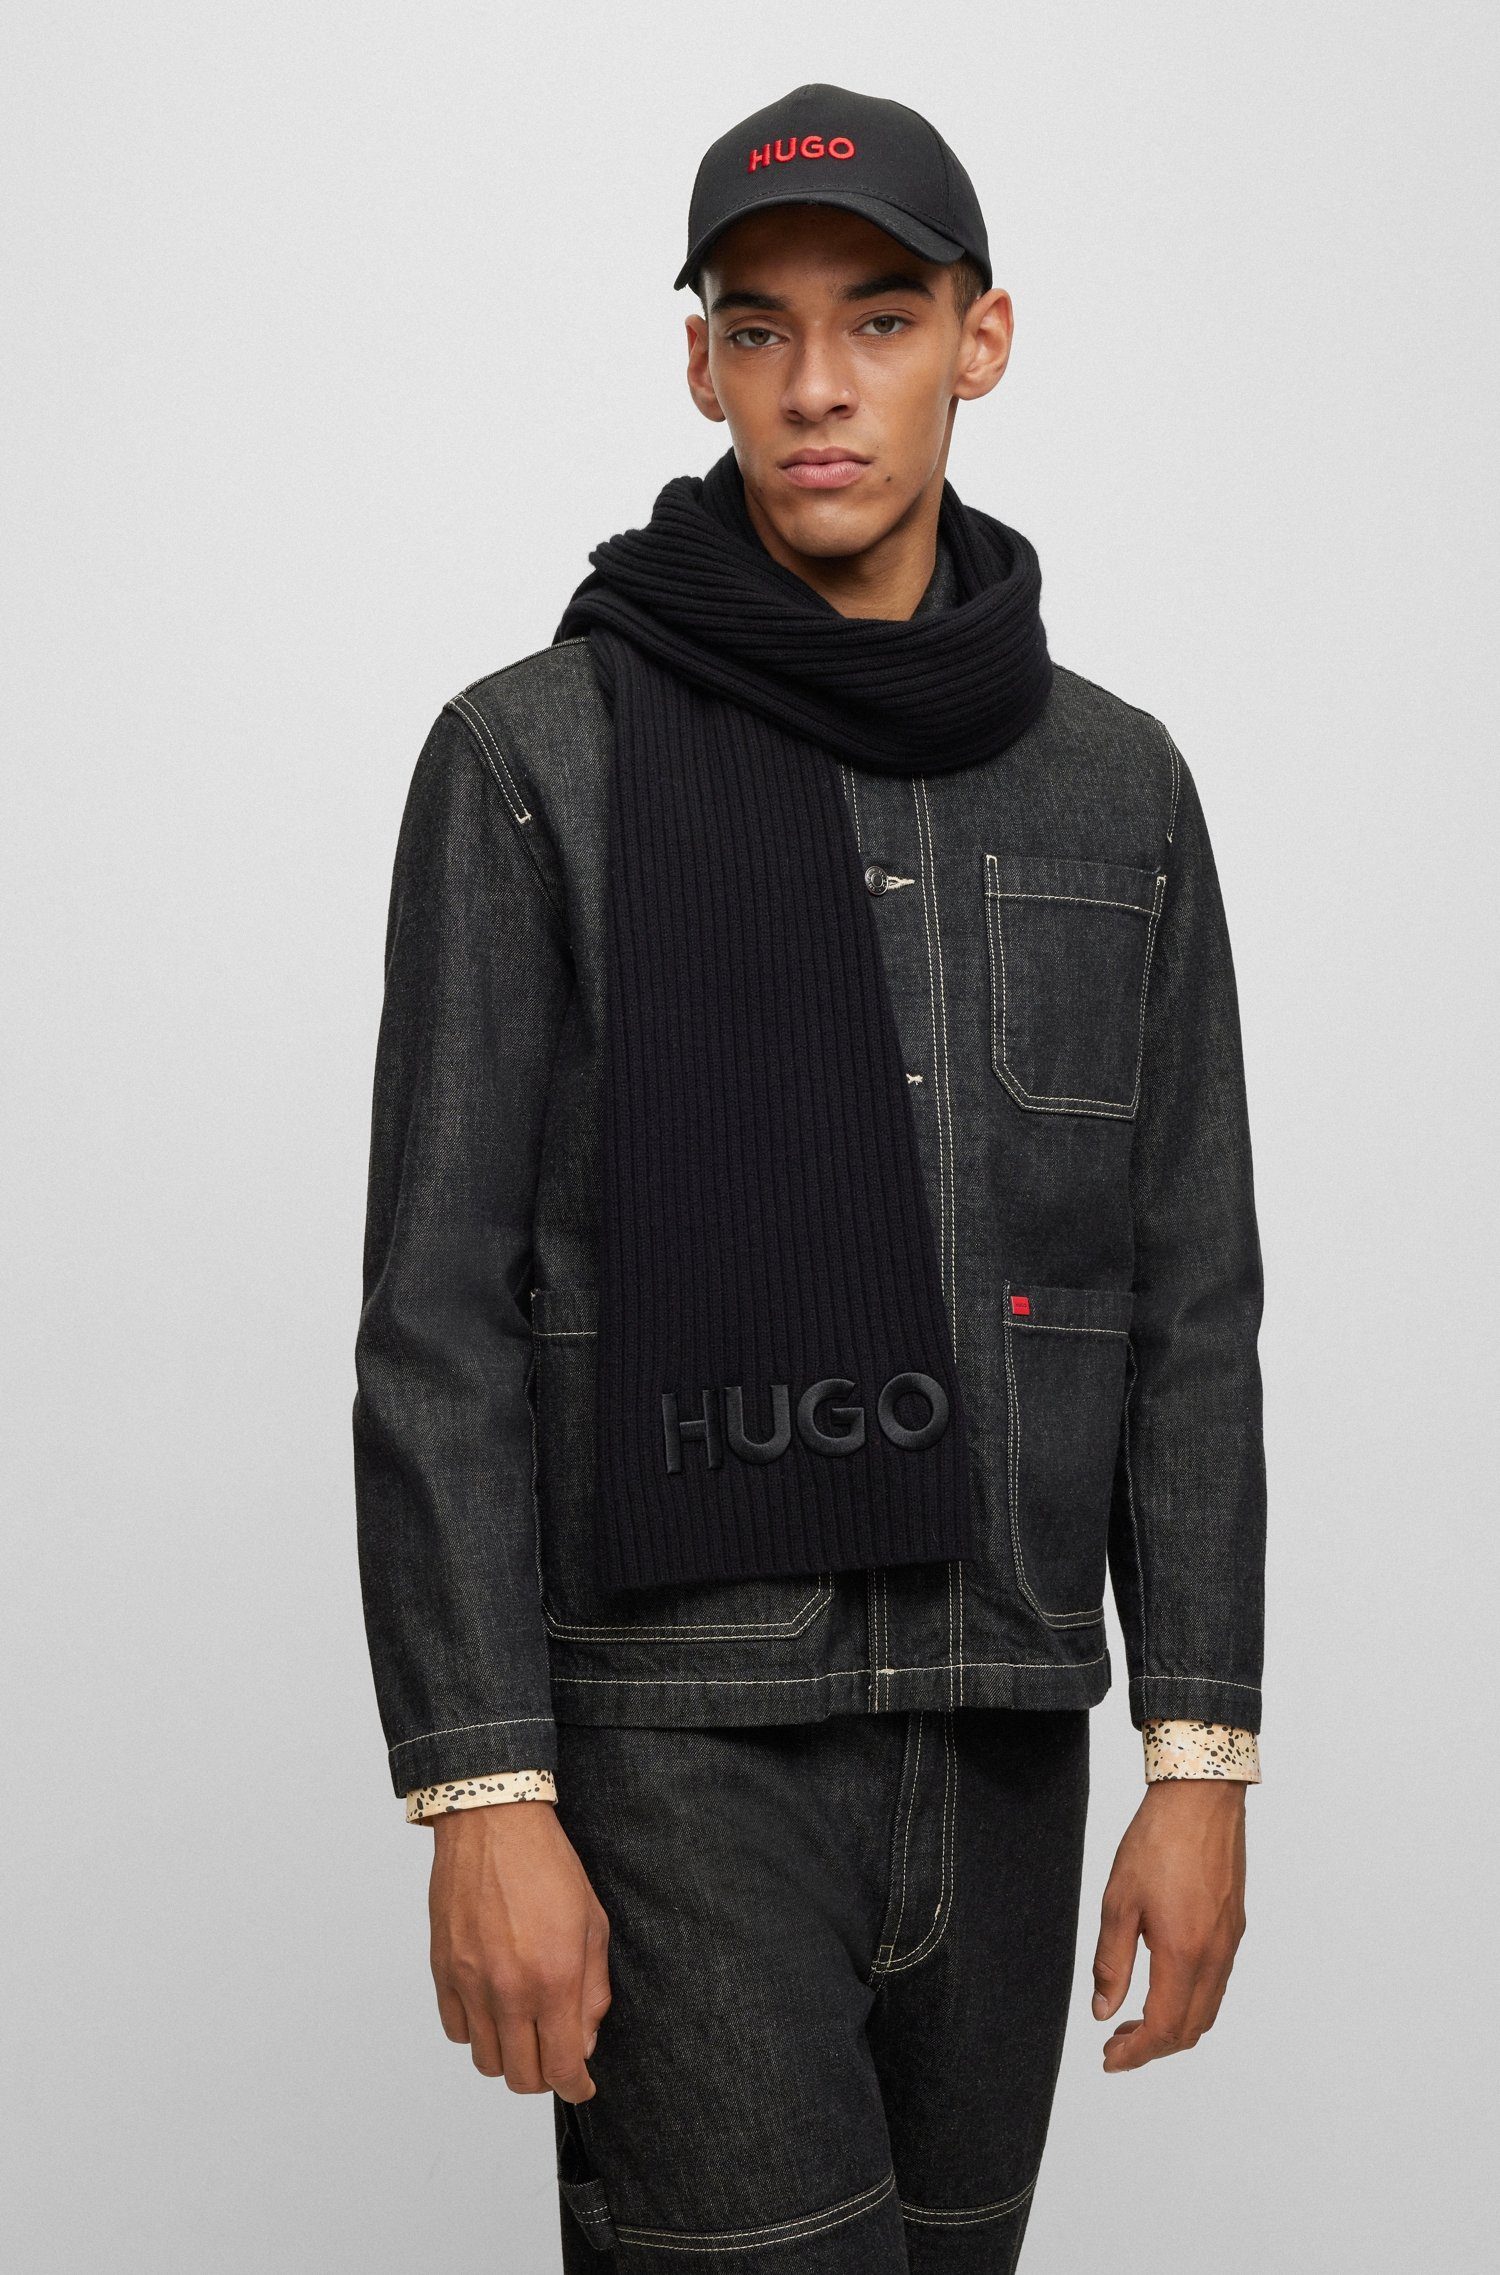 HUGO-Logoschriftzug mit HUGO Zunio-1, Black Schal